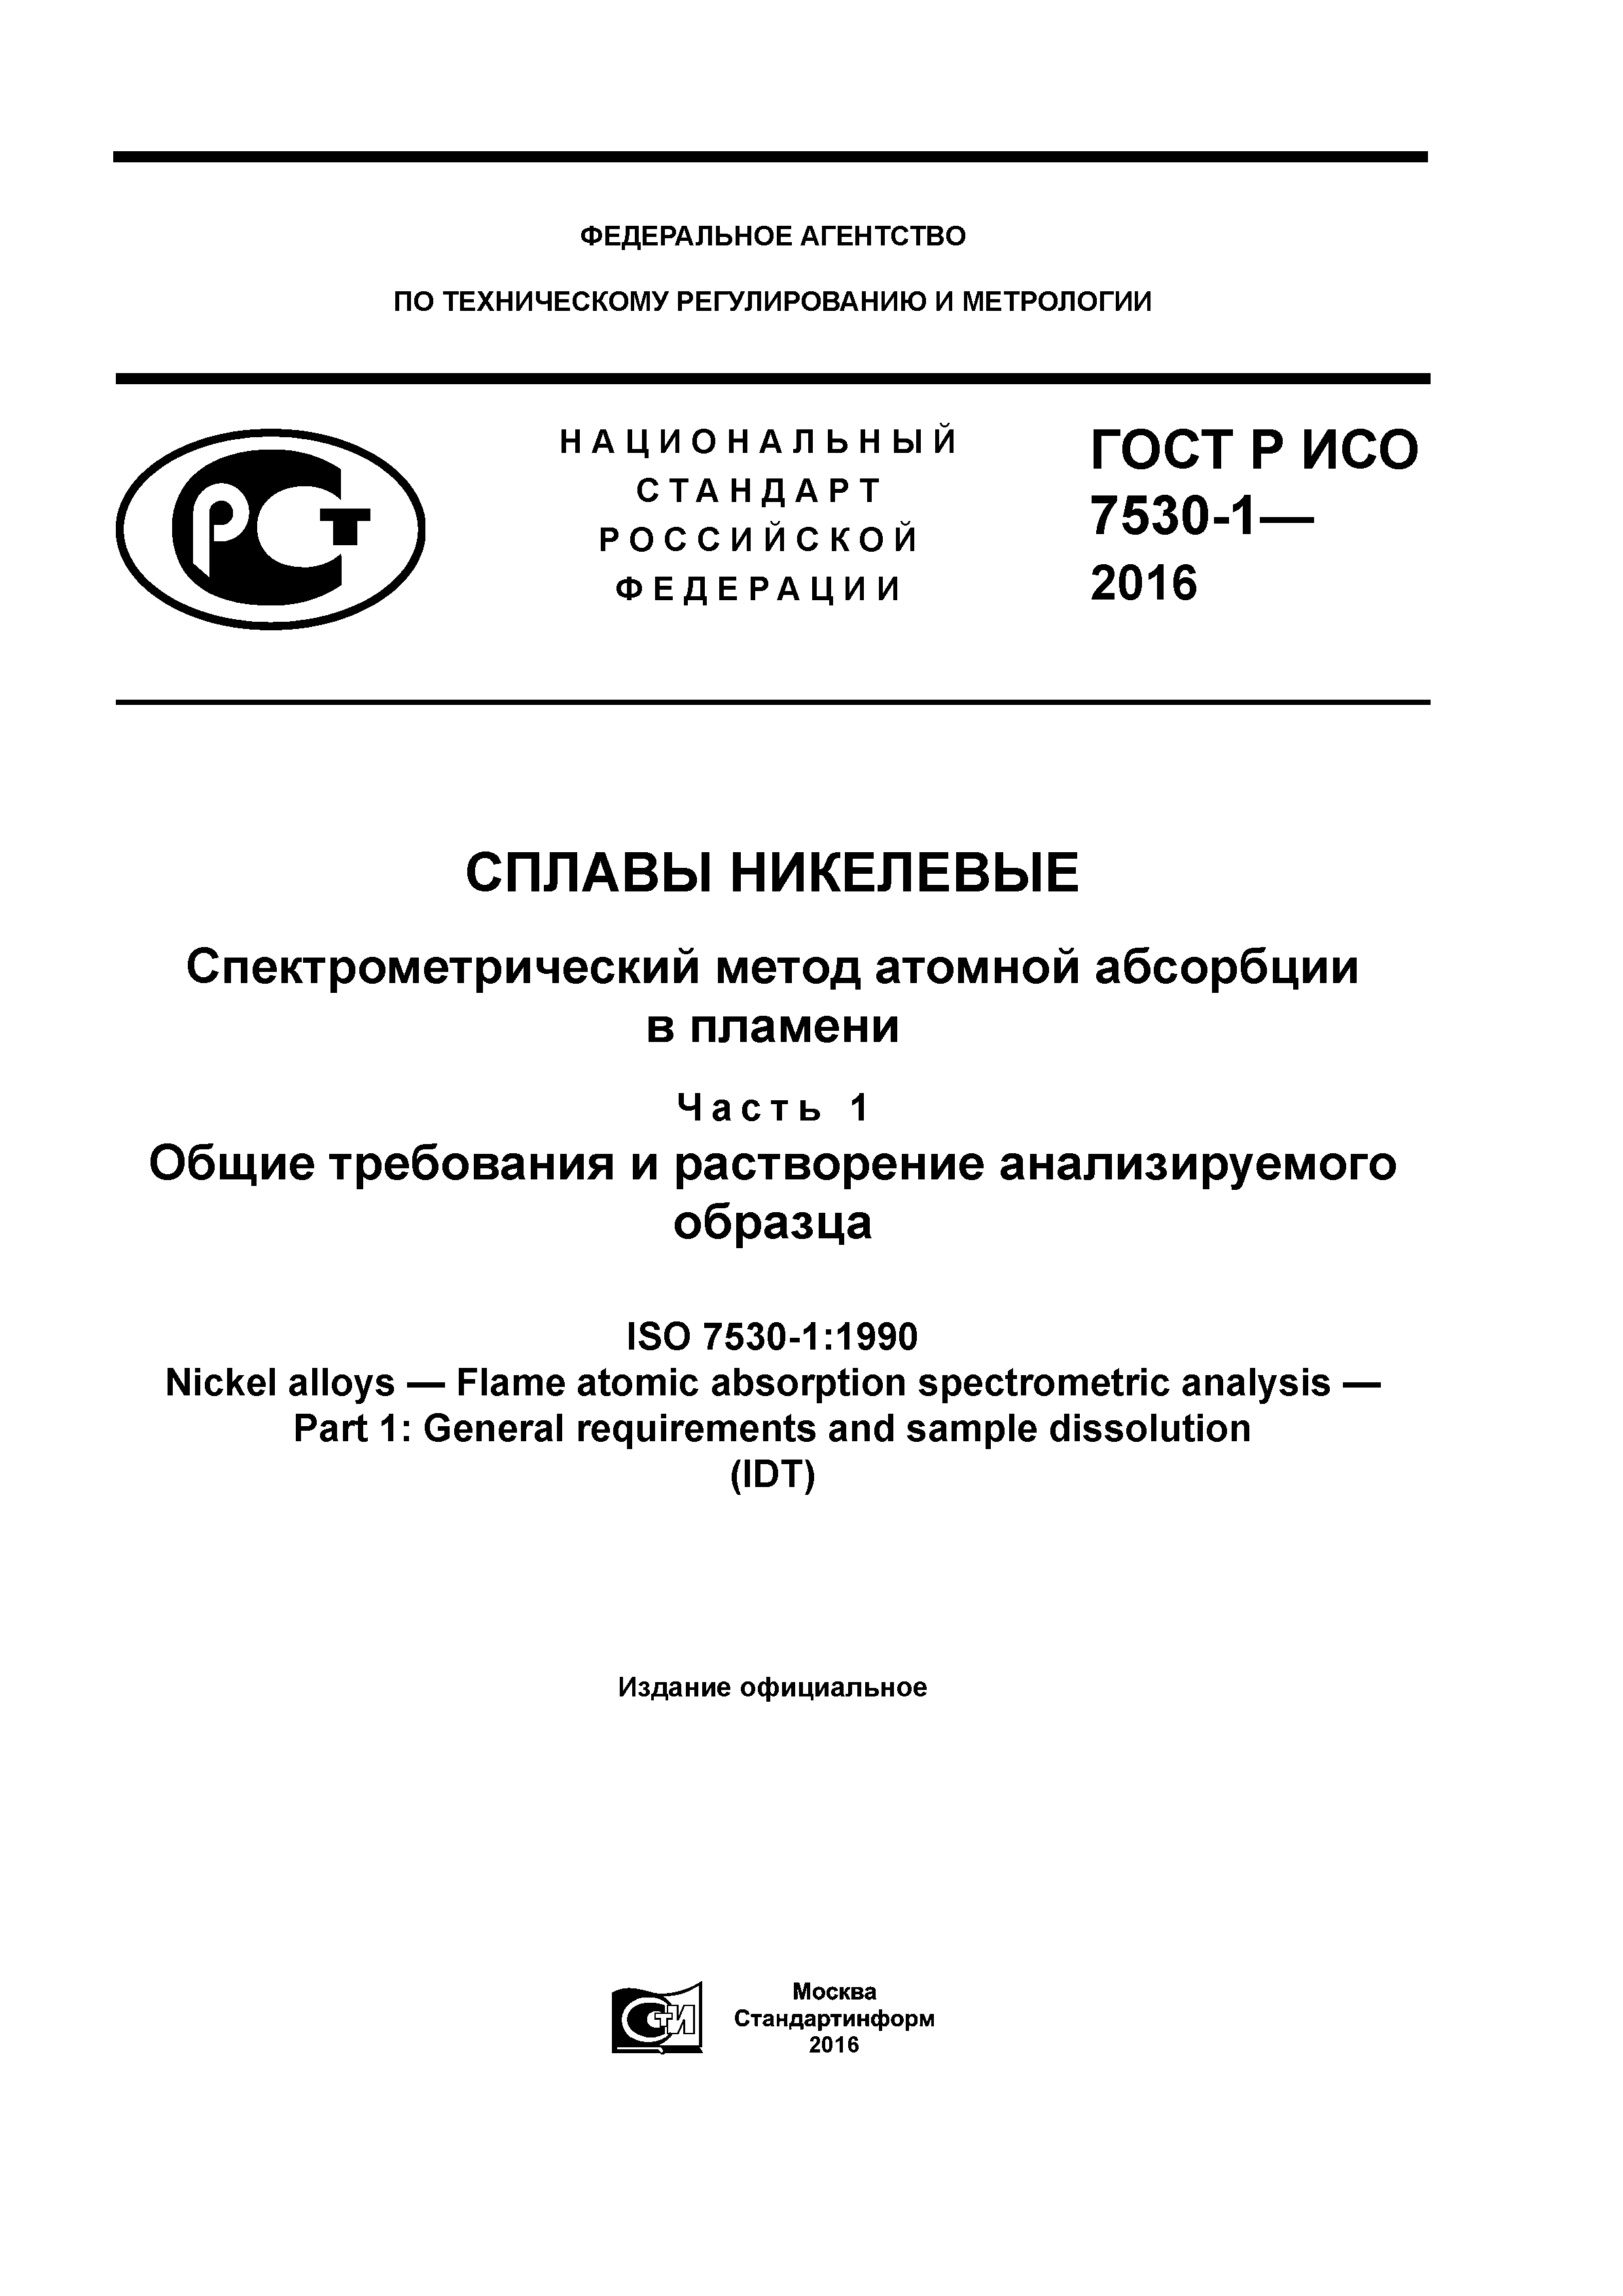 ГОСТ Р ИСО 7530-1-2016